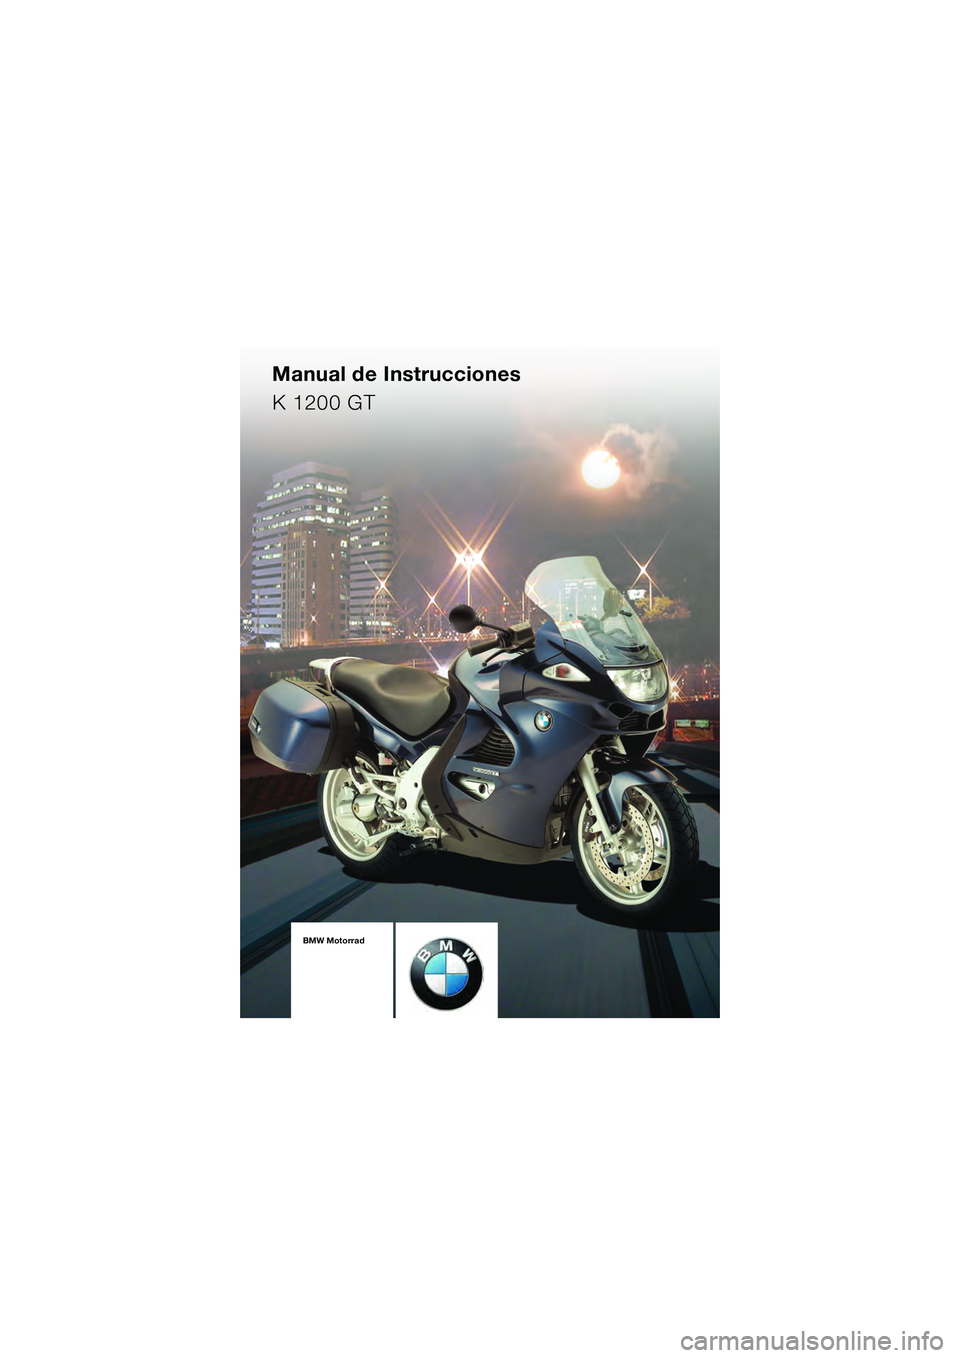 BMW MOTORRAD K 1200 GT 2004  Manual de instrucciones (in Spanish) 1BMW Motorrad
Manual de Instrucciones
K 1200 GT
10k41bke3.book
  Seite 97  Mittwoch, 26.  Mai 2004  10:12 22 